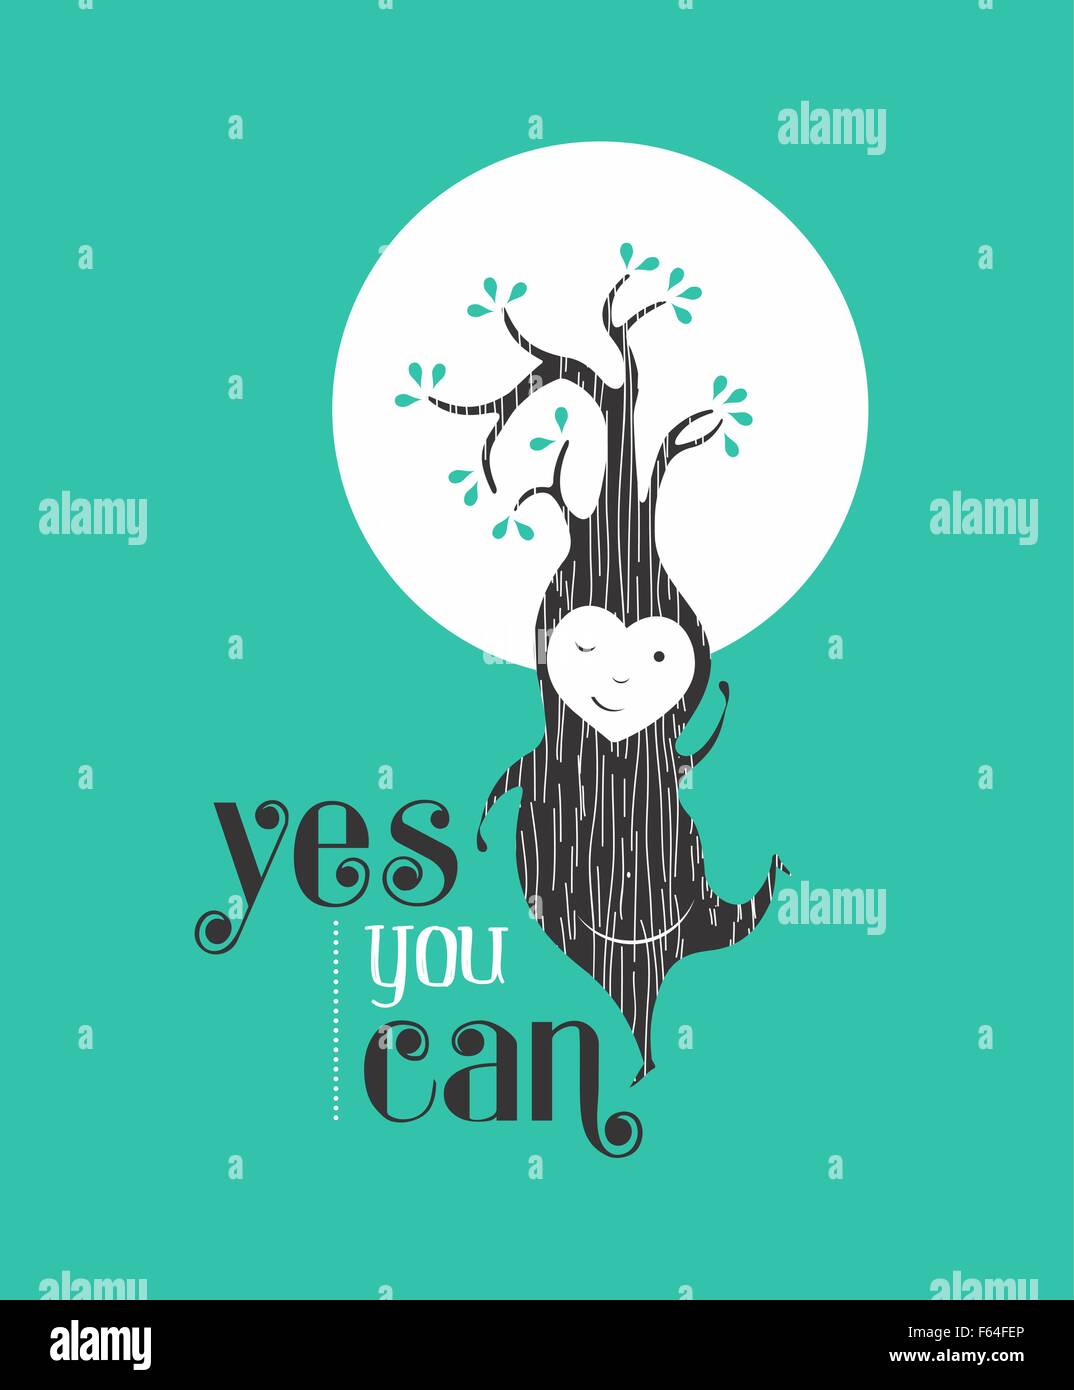 Oui, vous pouvez citer la motivation de fond de carte de vœux avec happy tree elf la danse. Idéal pour un ami ou un poster. Vecteur EPS10. Illustration de Vecteur